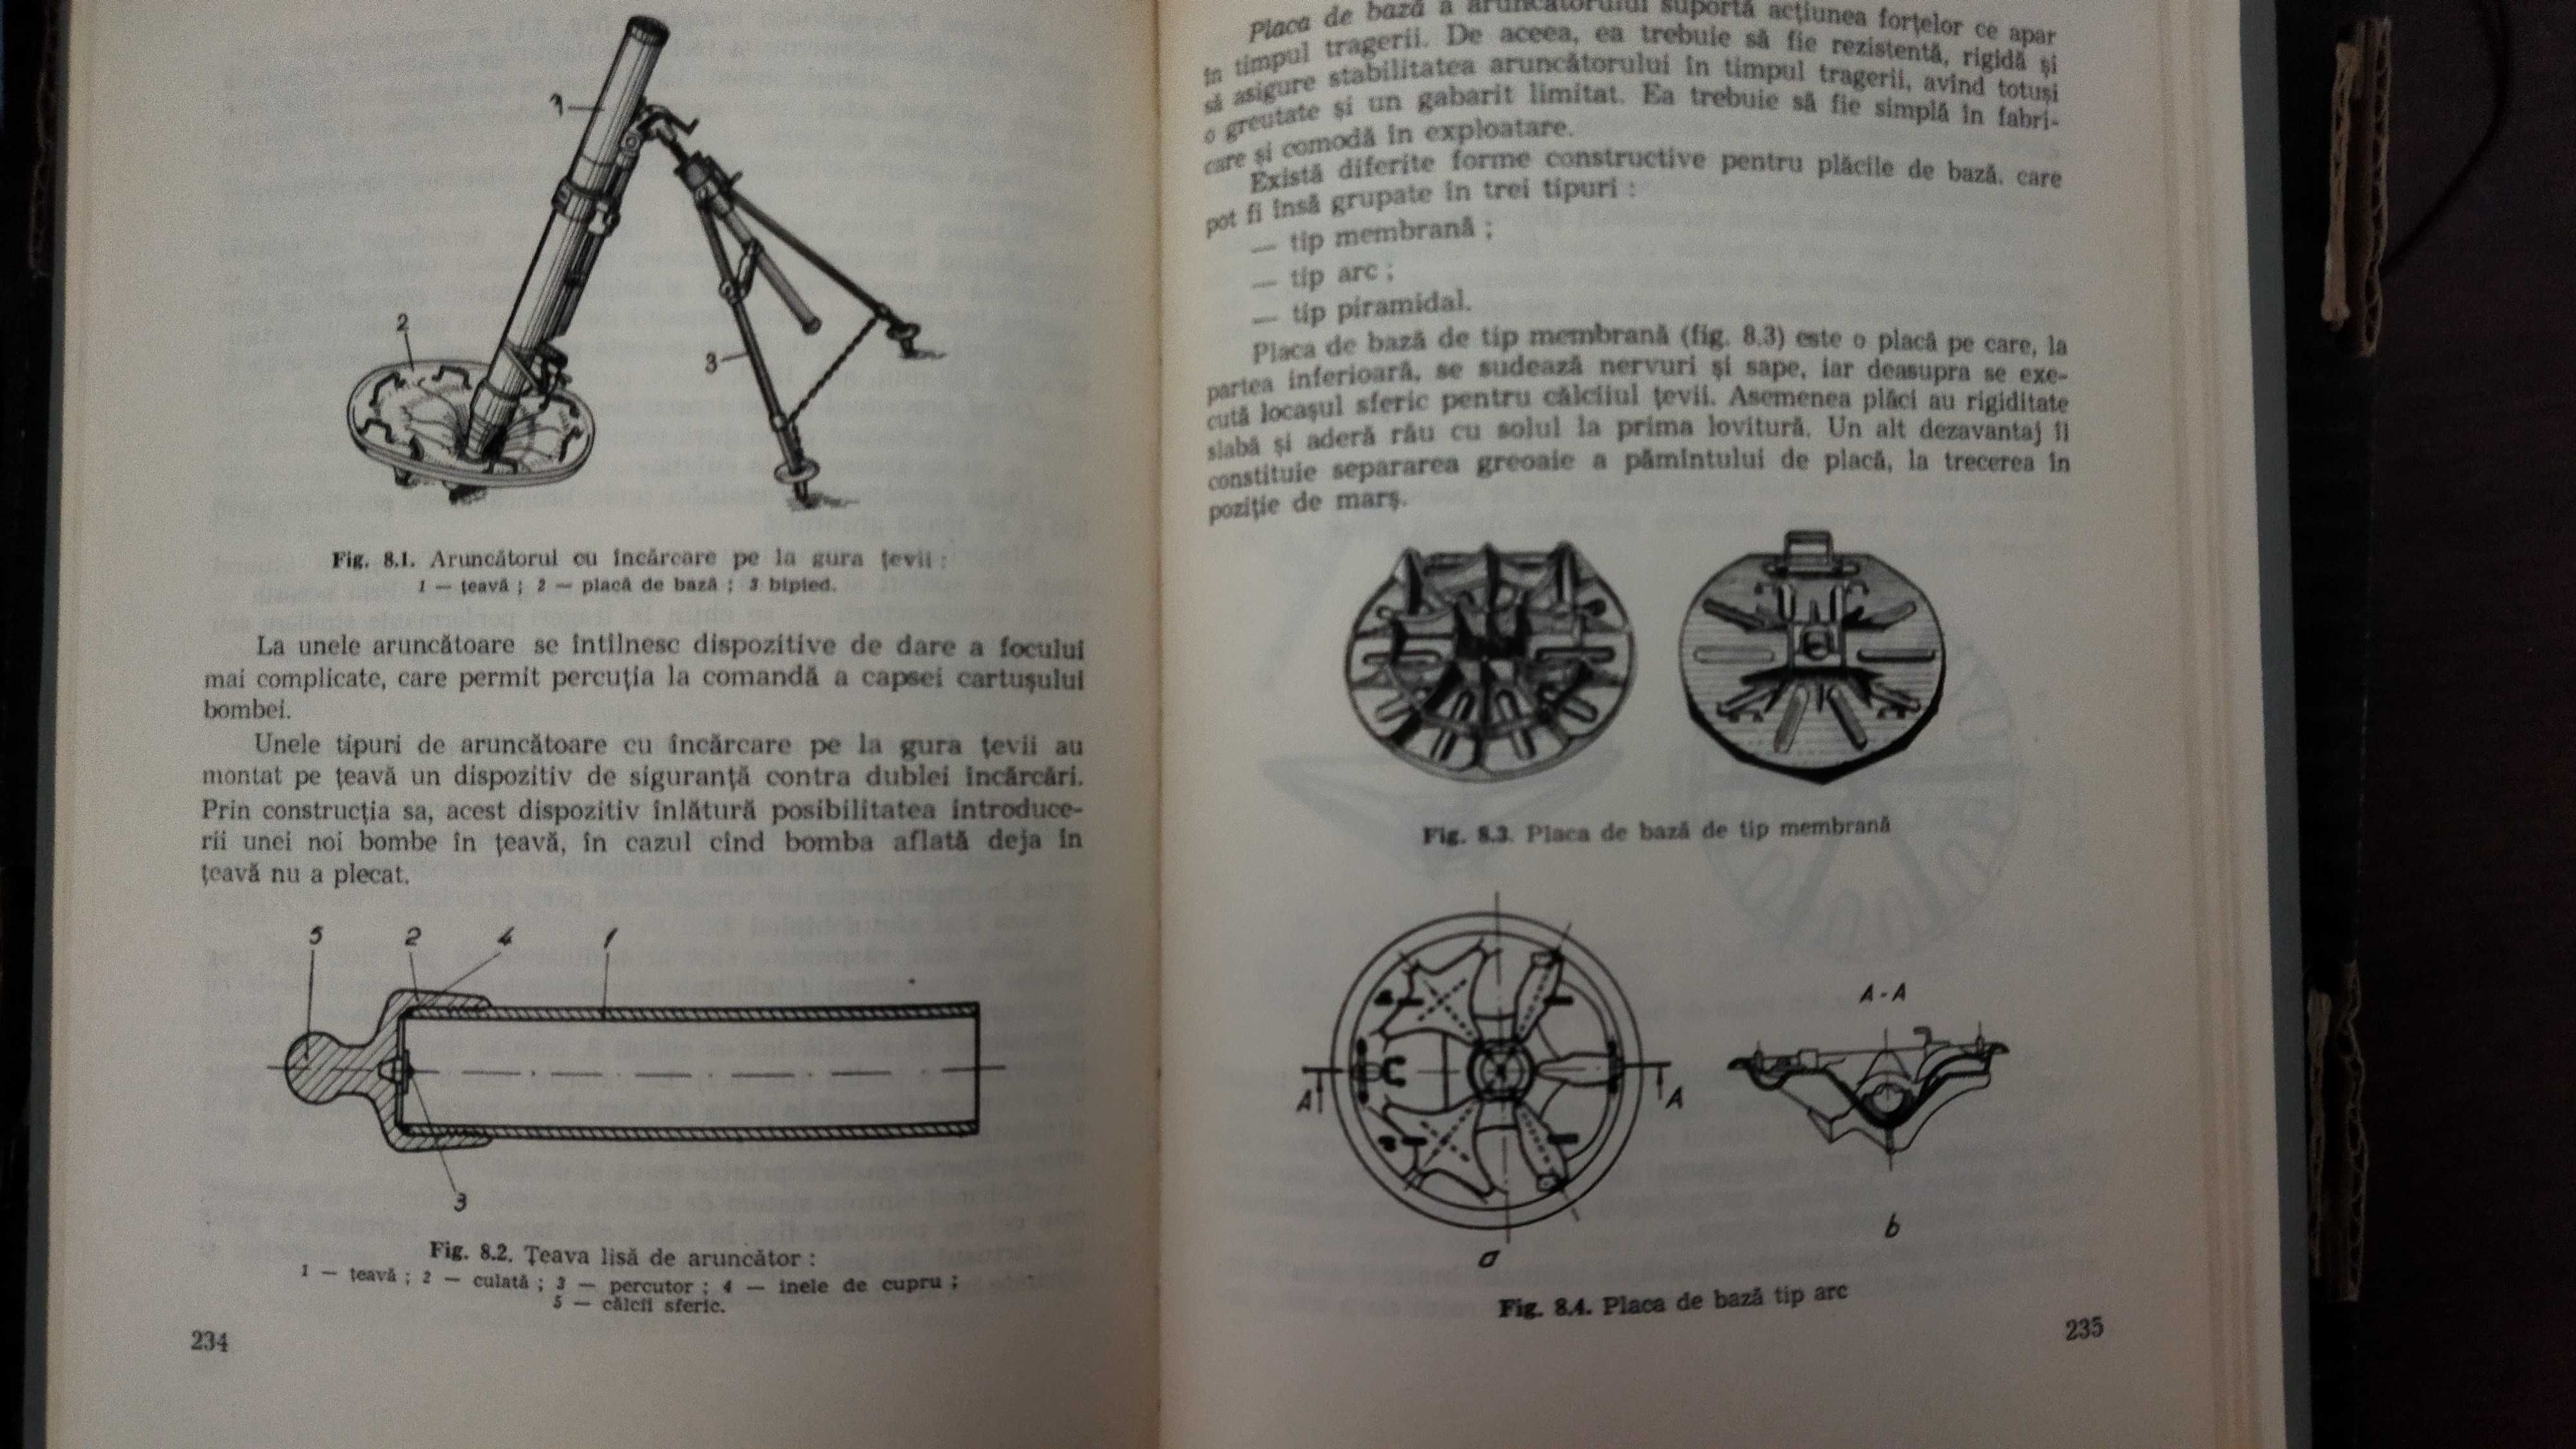 Carti militare Manuale Pentru ofiteri artilerie 1974-1976